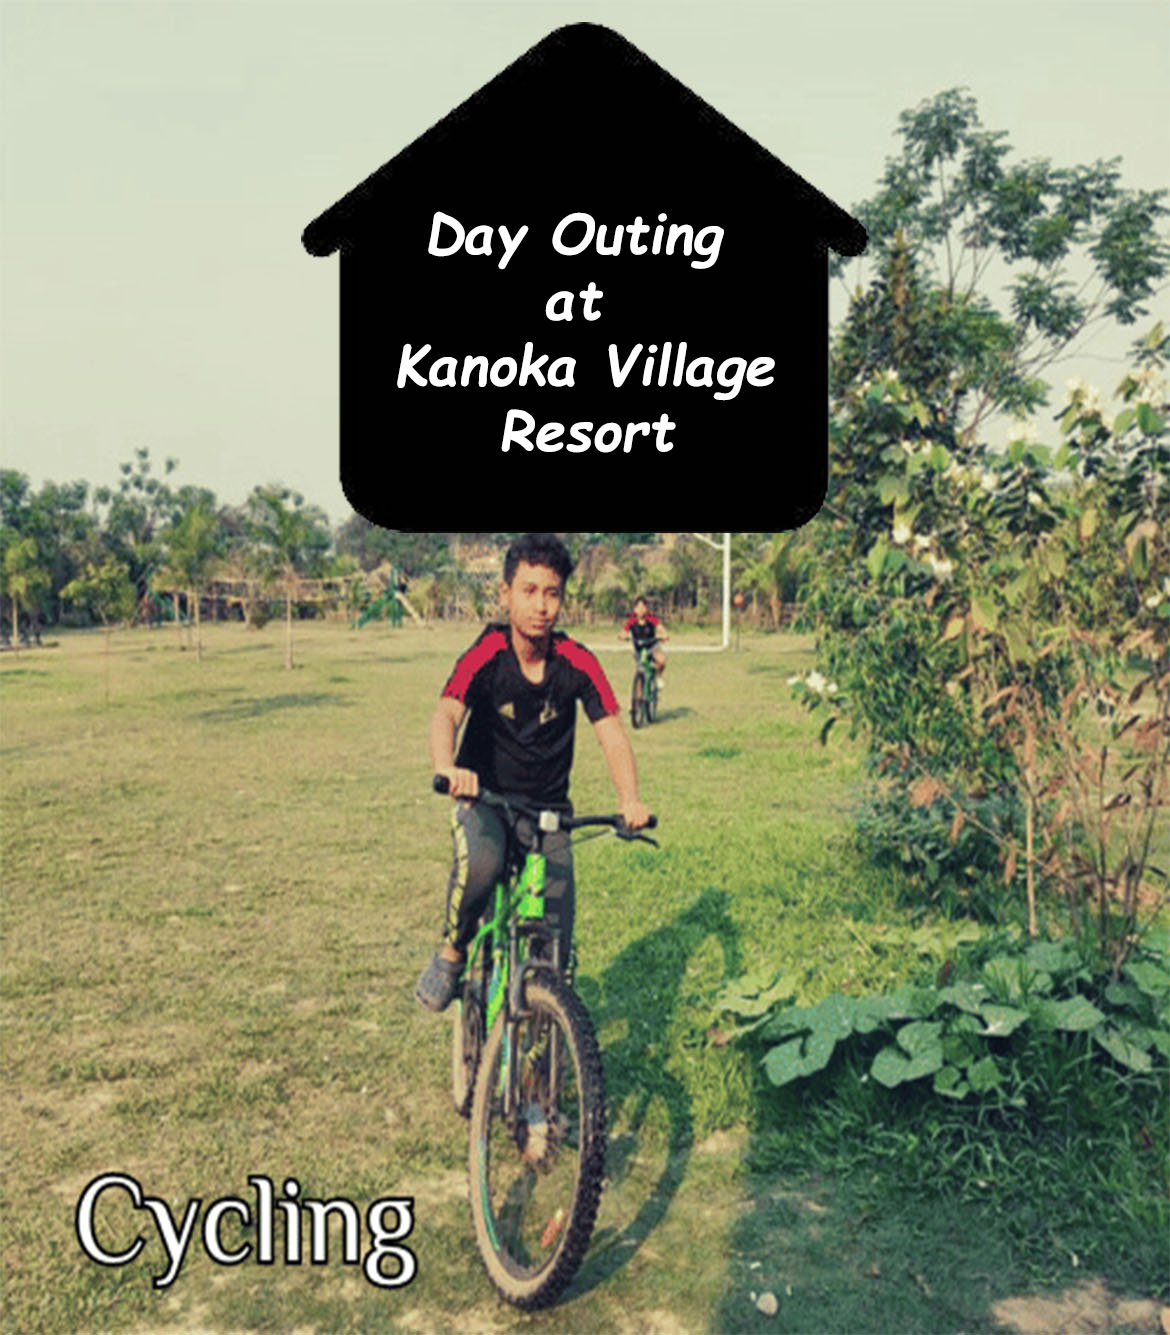 Day Outing at Kanoka Village Resort